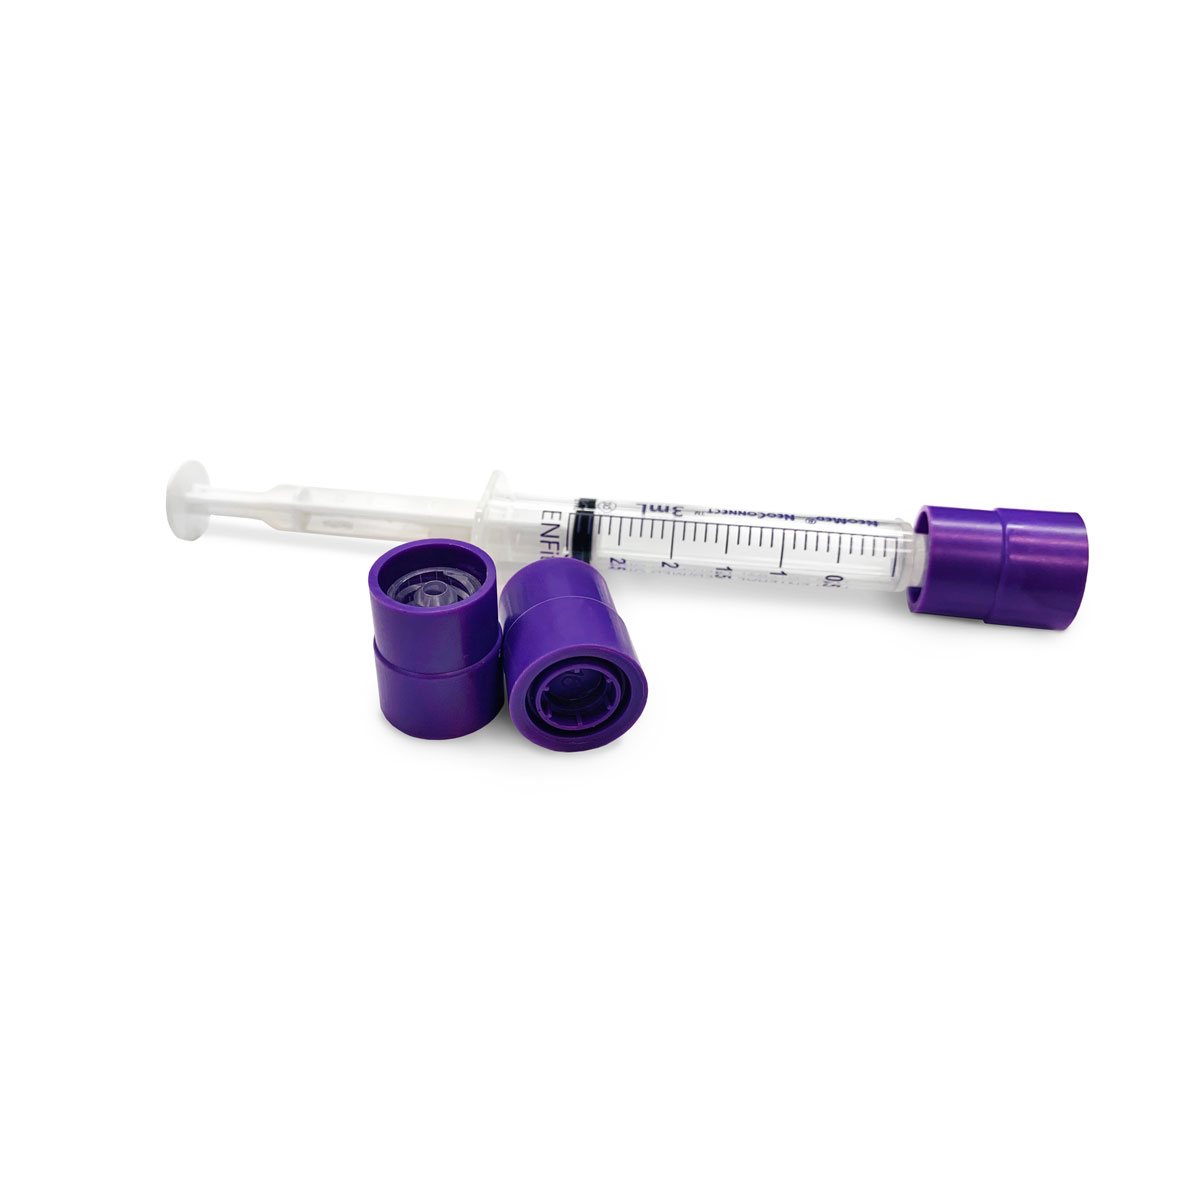 Prep-Lock Tamper Evident Caps for ENFit Syringes